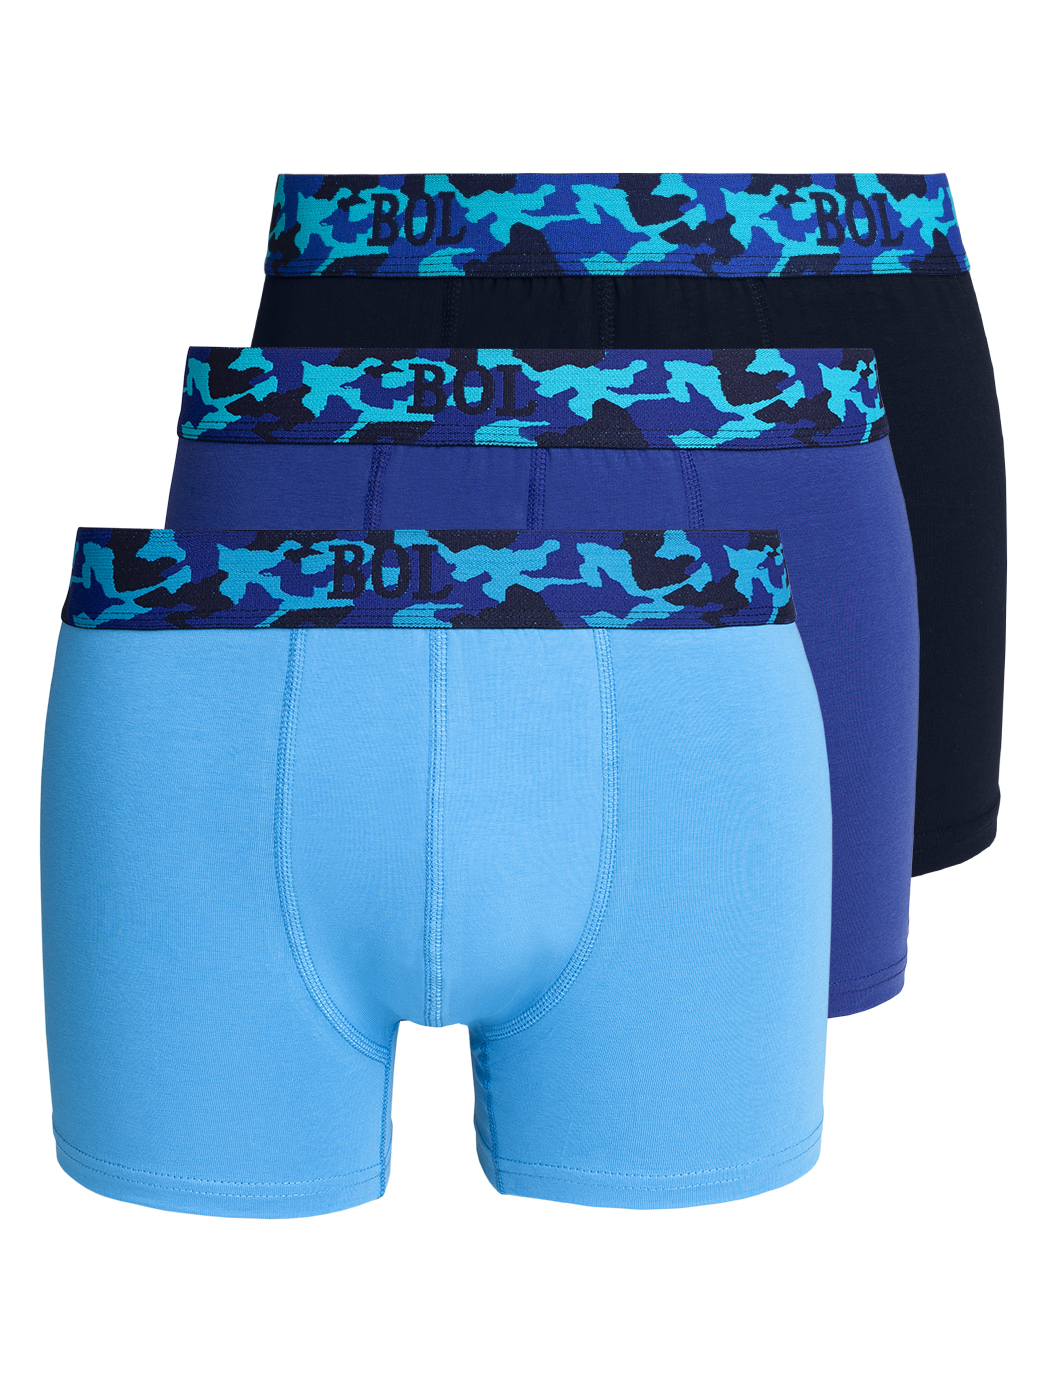 Комплект трусов мужских BOL Men's 178 синих; голубых XL